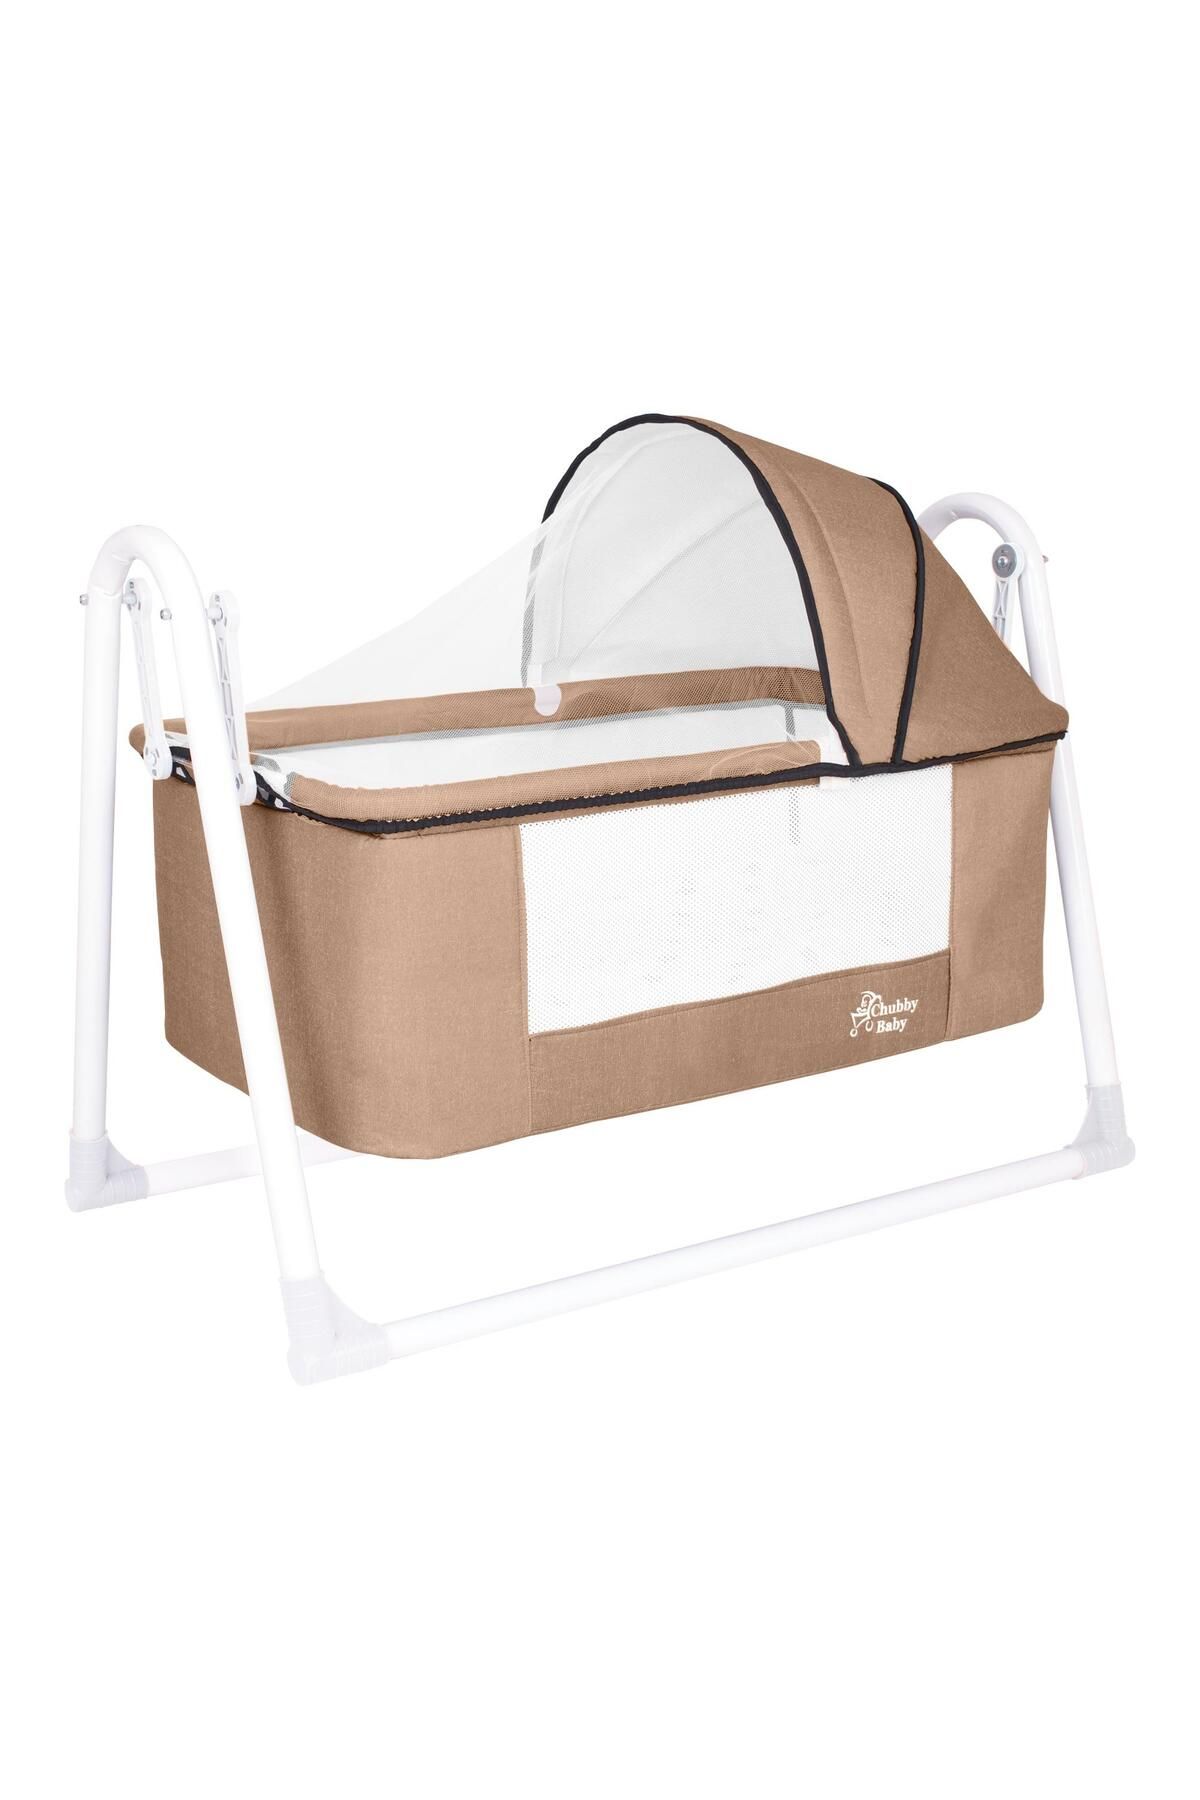 CHUBBY BABY First Class Portatif-Keten Tenteli Sepet Beşik Silinebilir Kumaş Bej